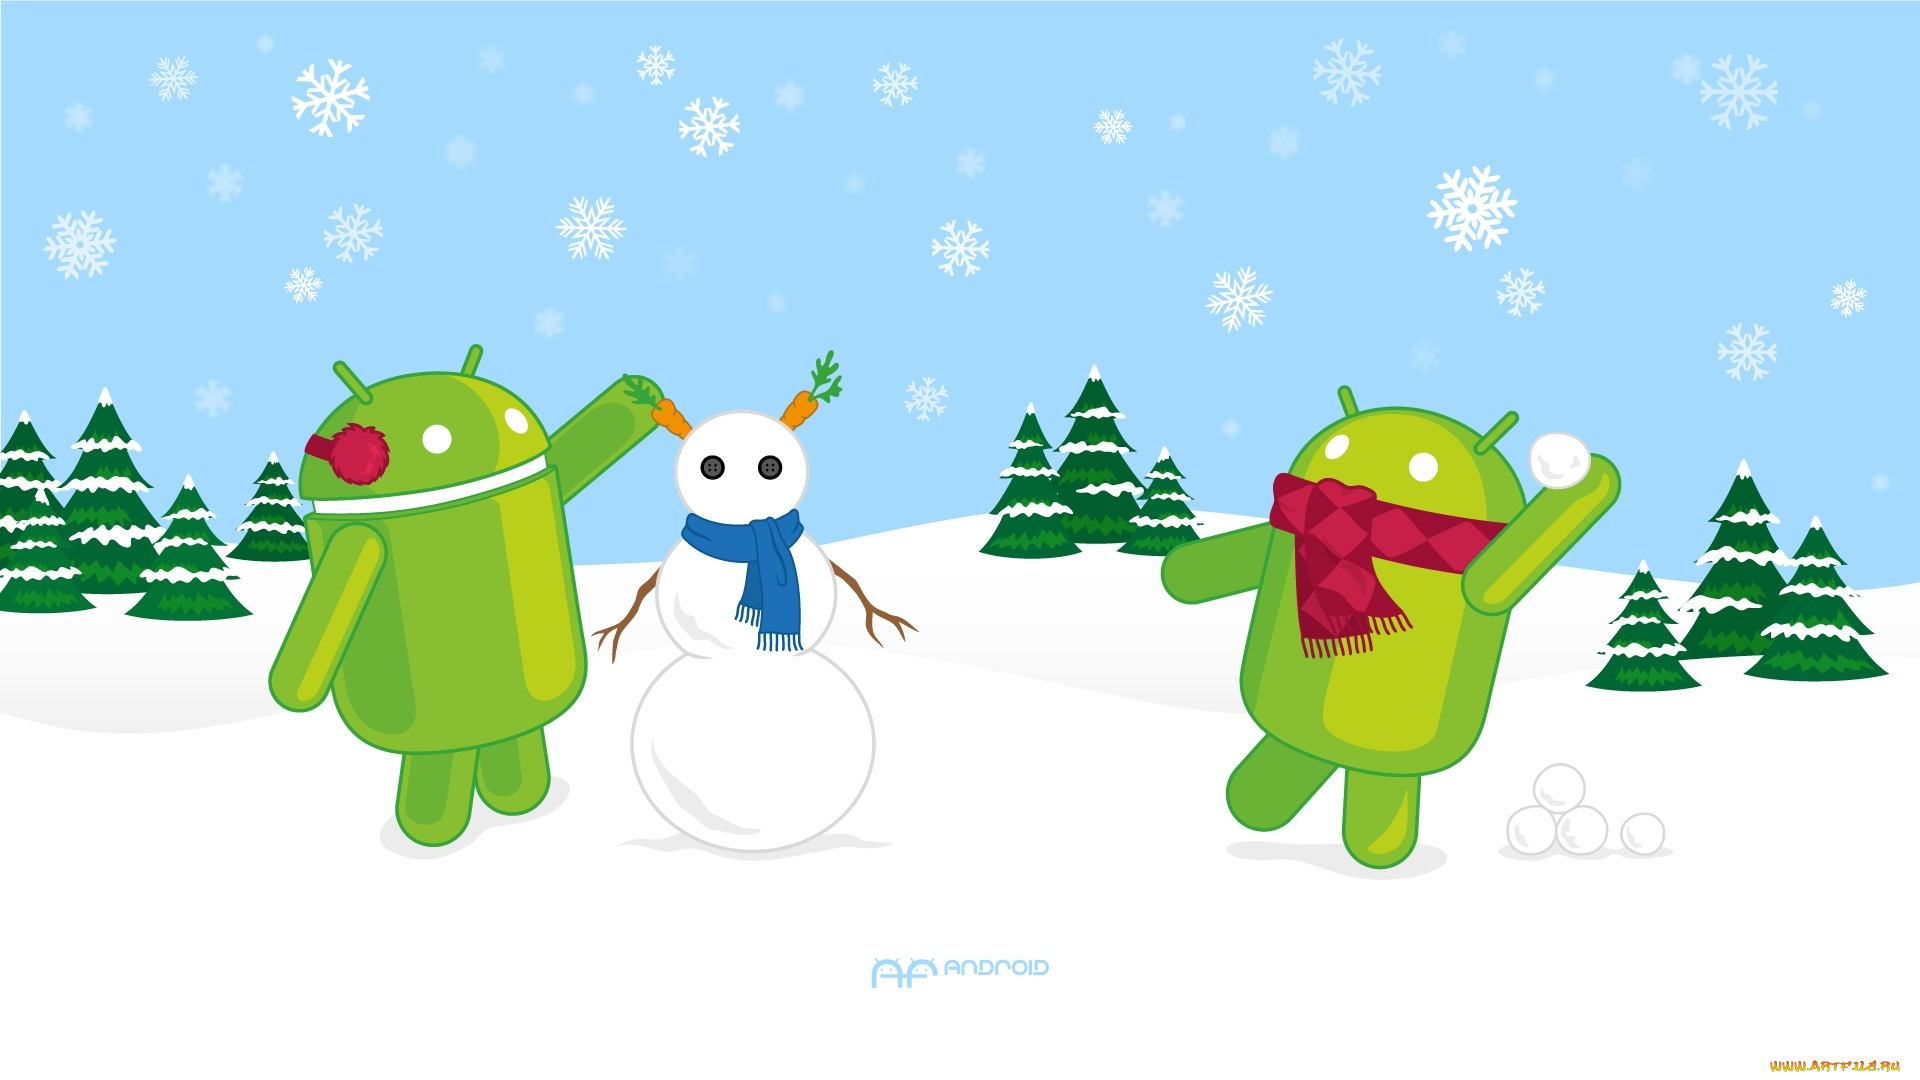 компьютеры, android, ели, снеговик, снег